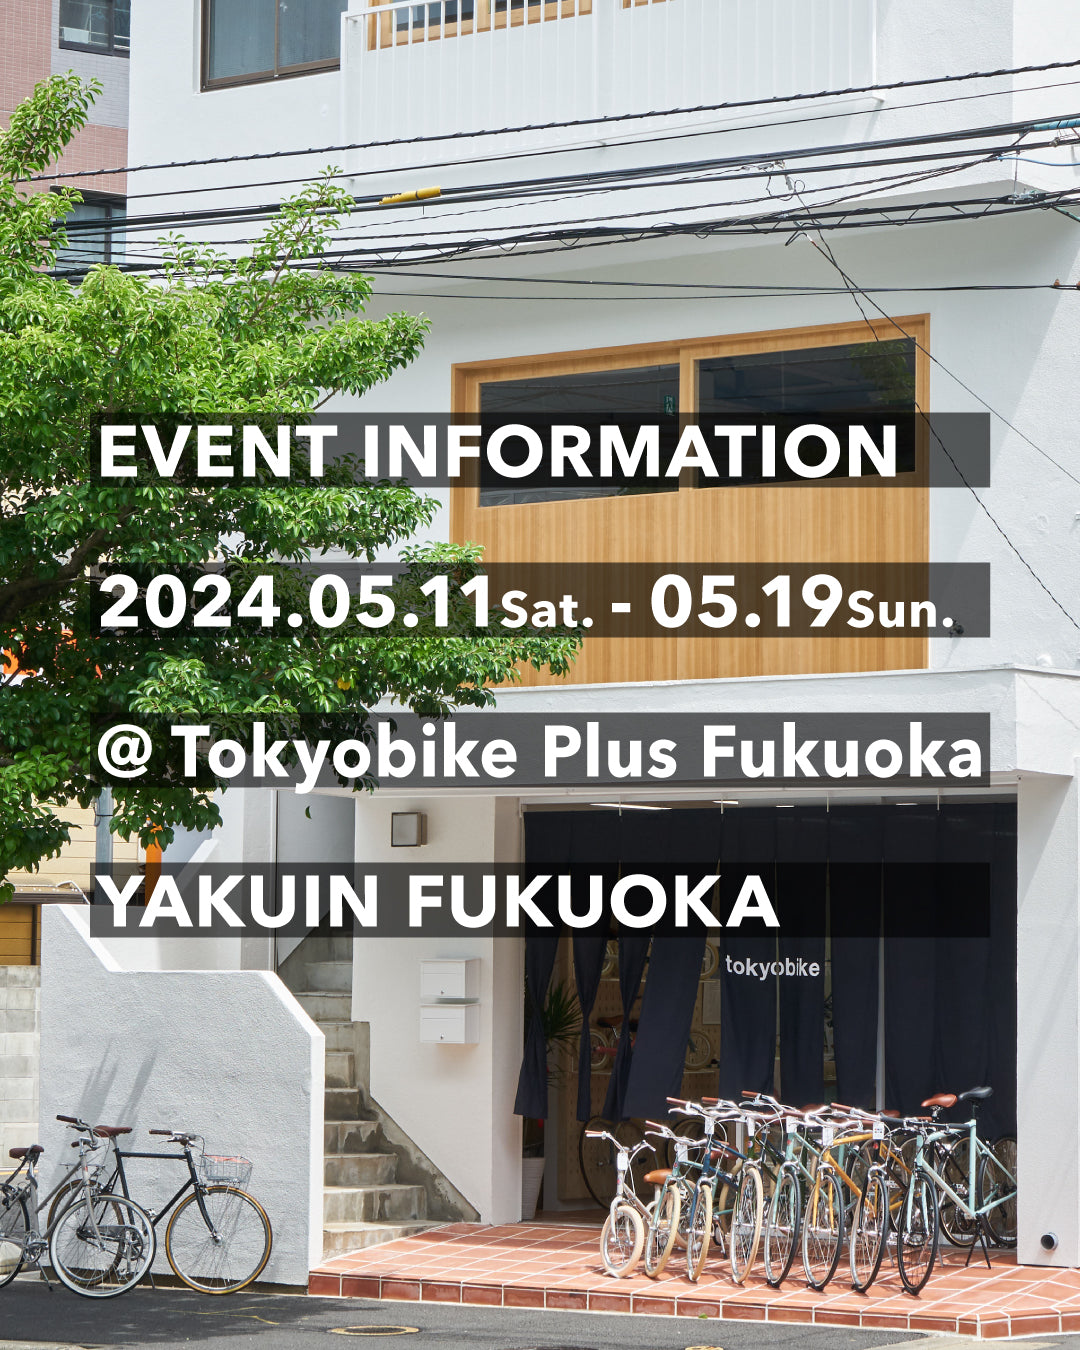 5/11-5/19 福岡・薬院のTokyobike Plus Fukuokaにて、POP UP STORE開催